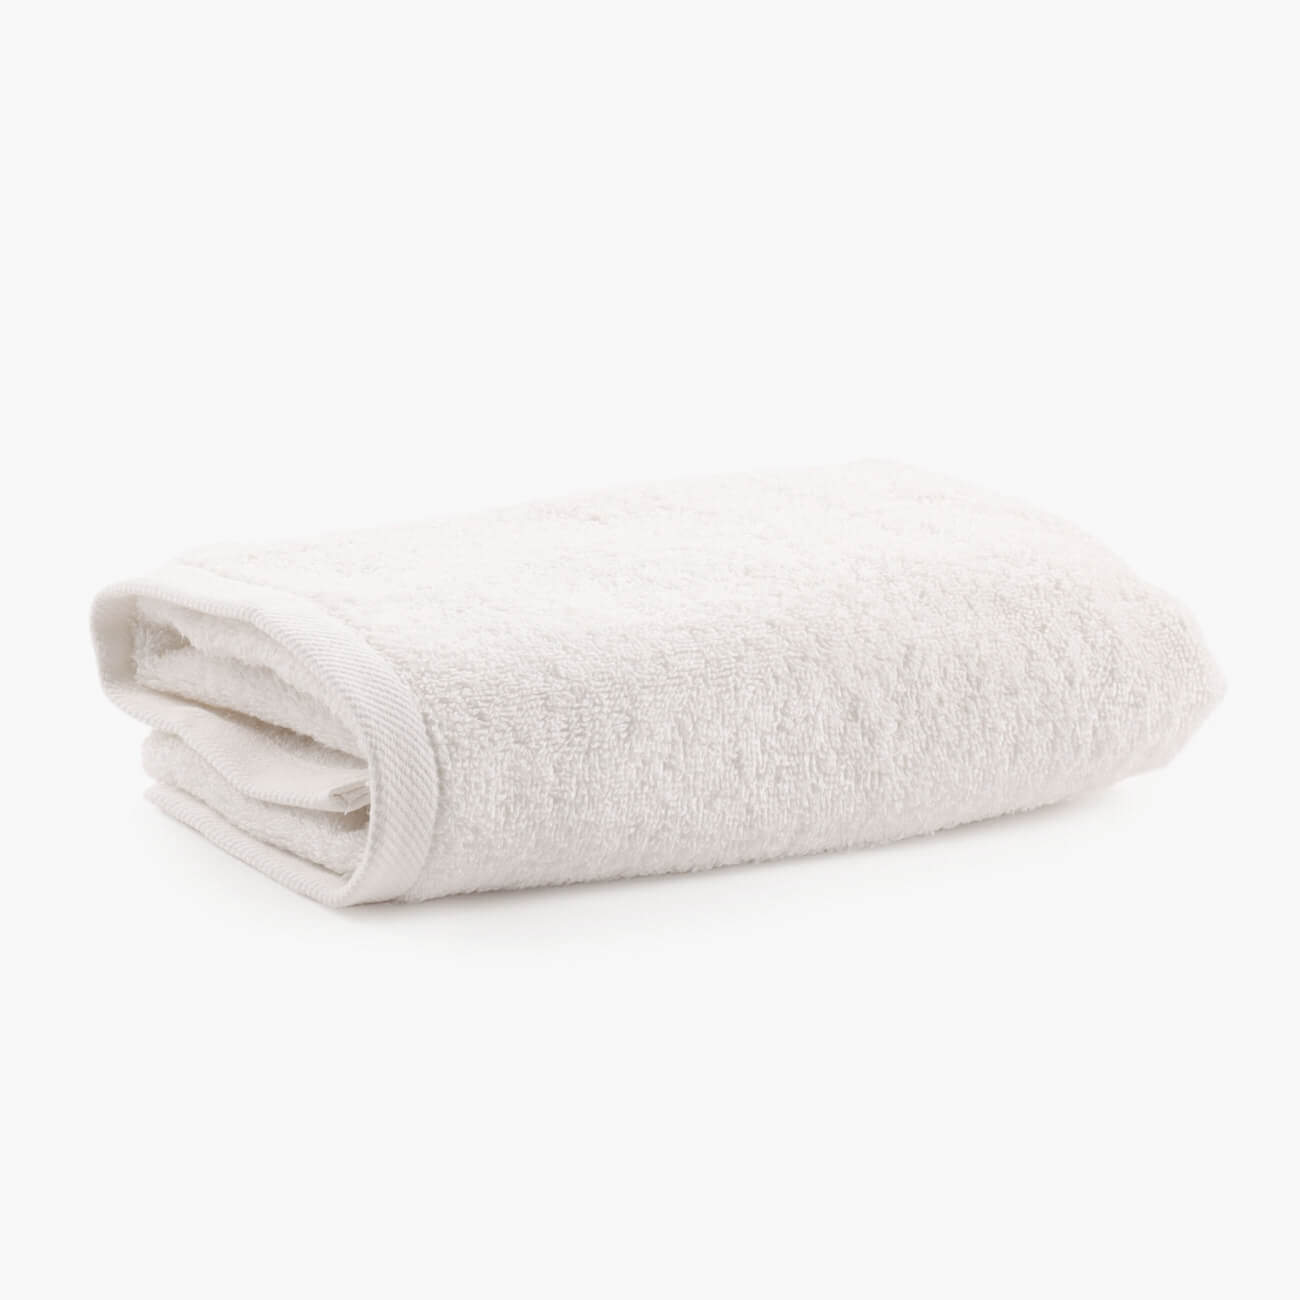 Полотенце, 50х90 см, хлопок, молочное, Wellness набор для полотенце уголок рукавица